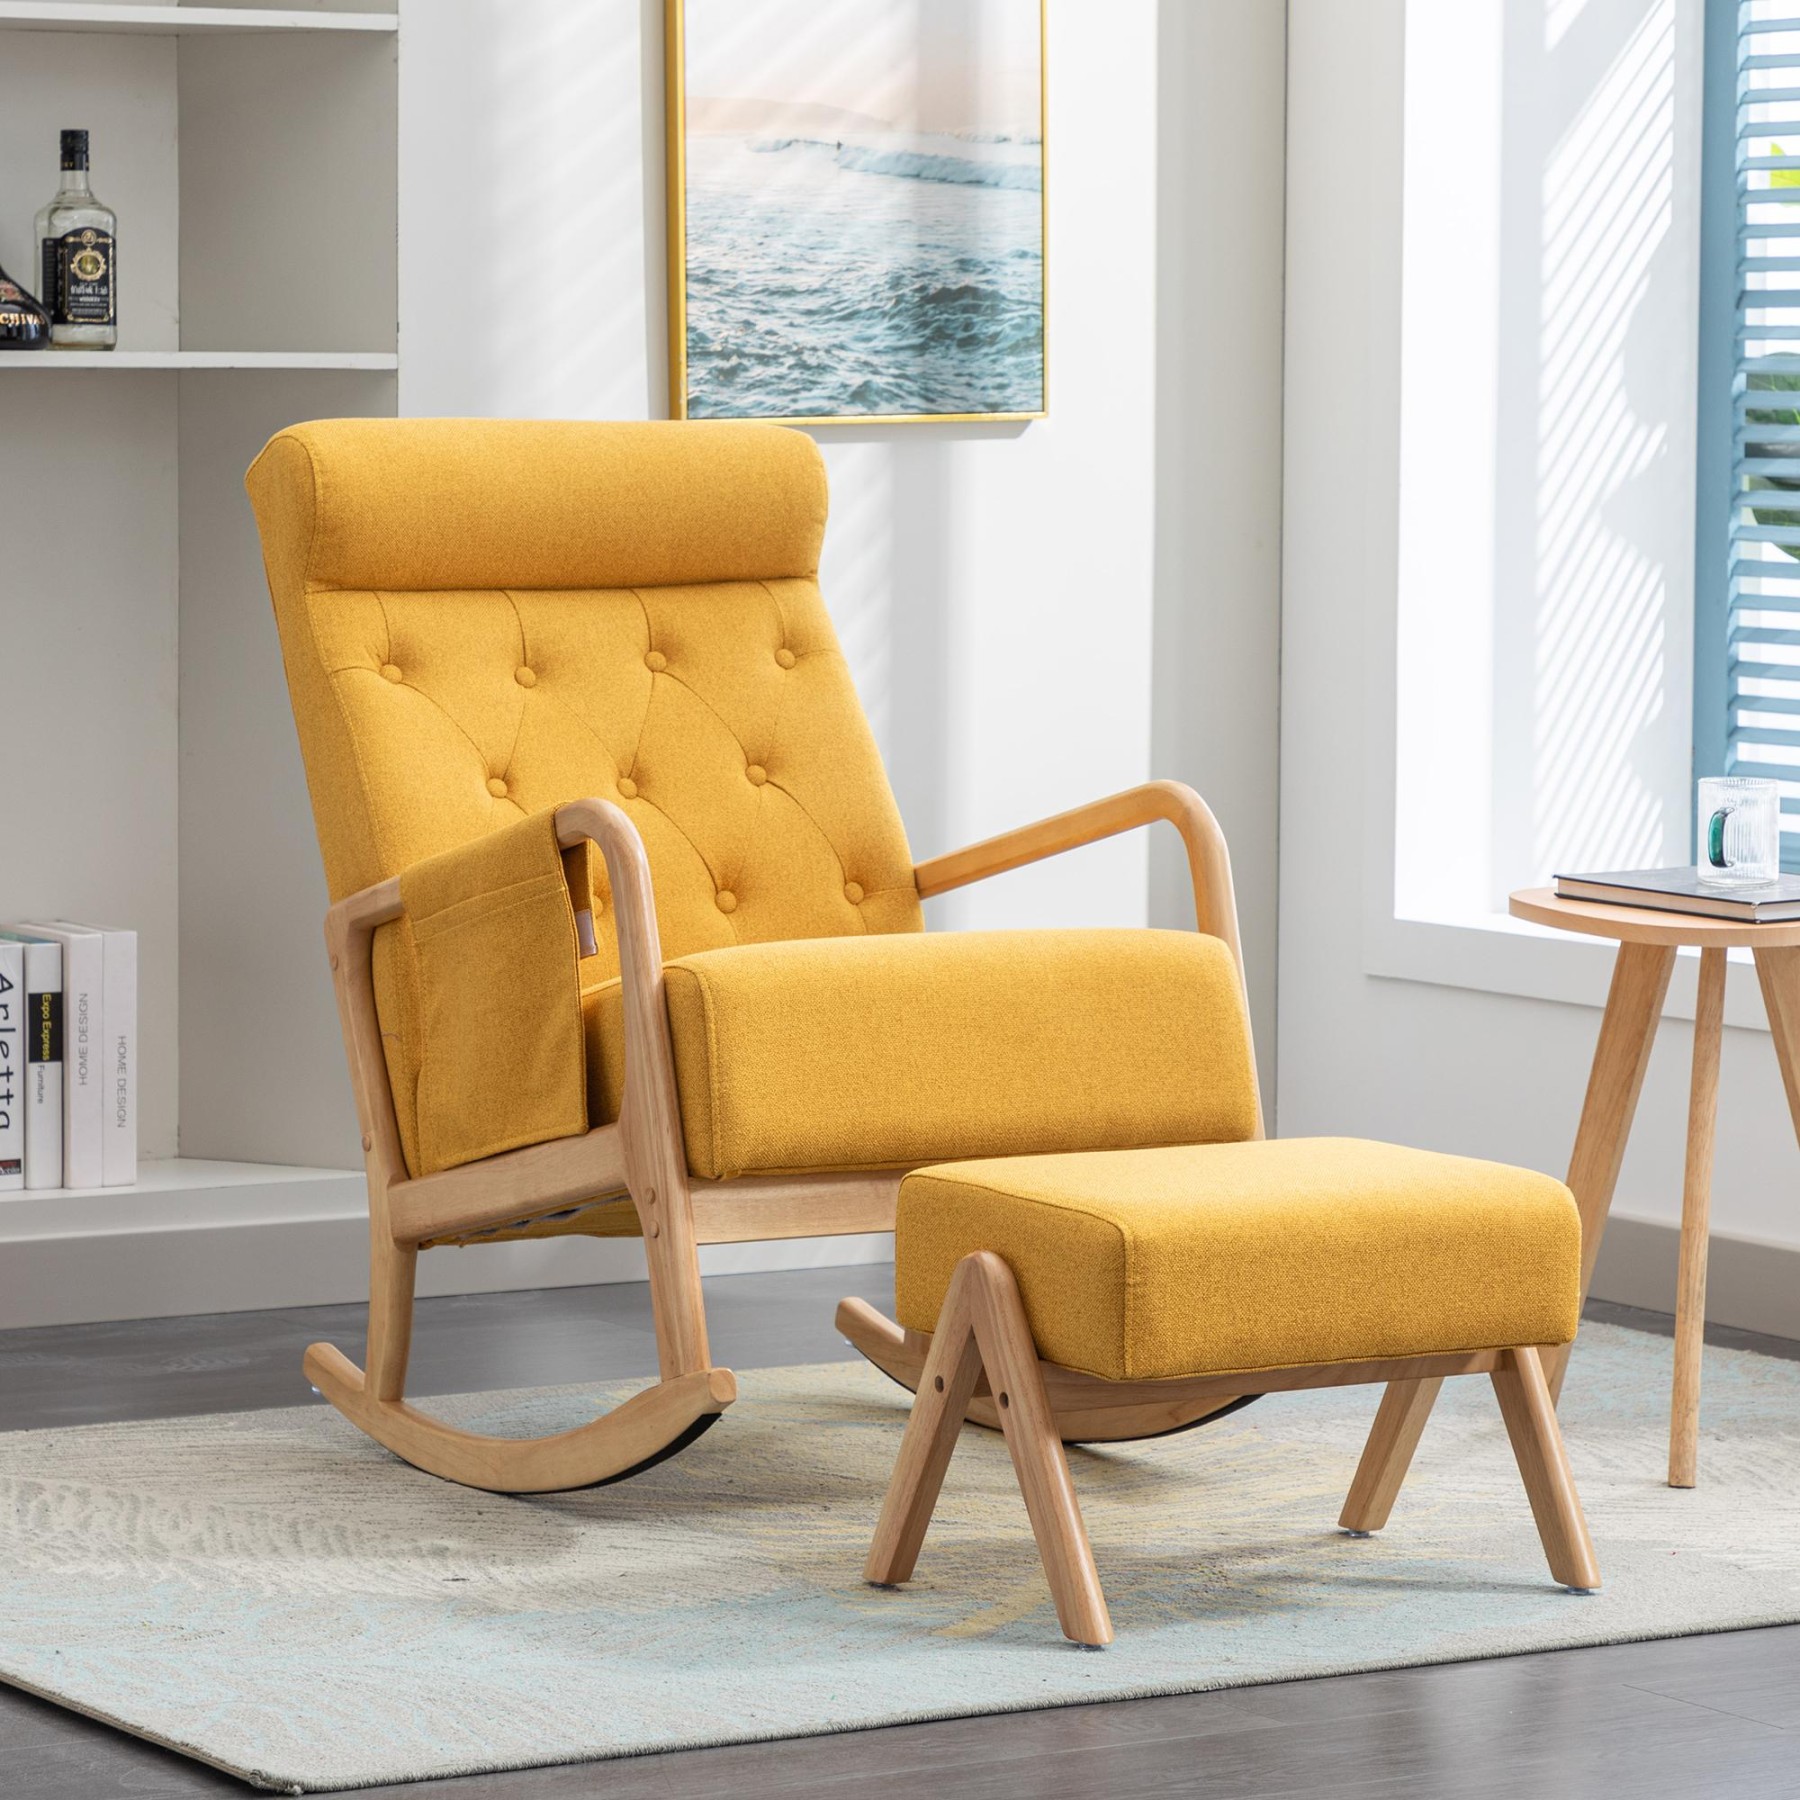 Sessel – bequemer Schaukelstuhl für das Wohnzimmer mit Fußstütze